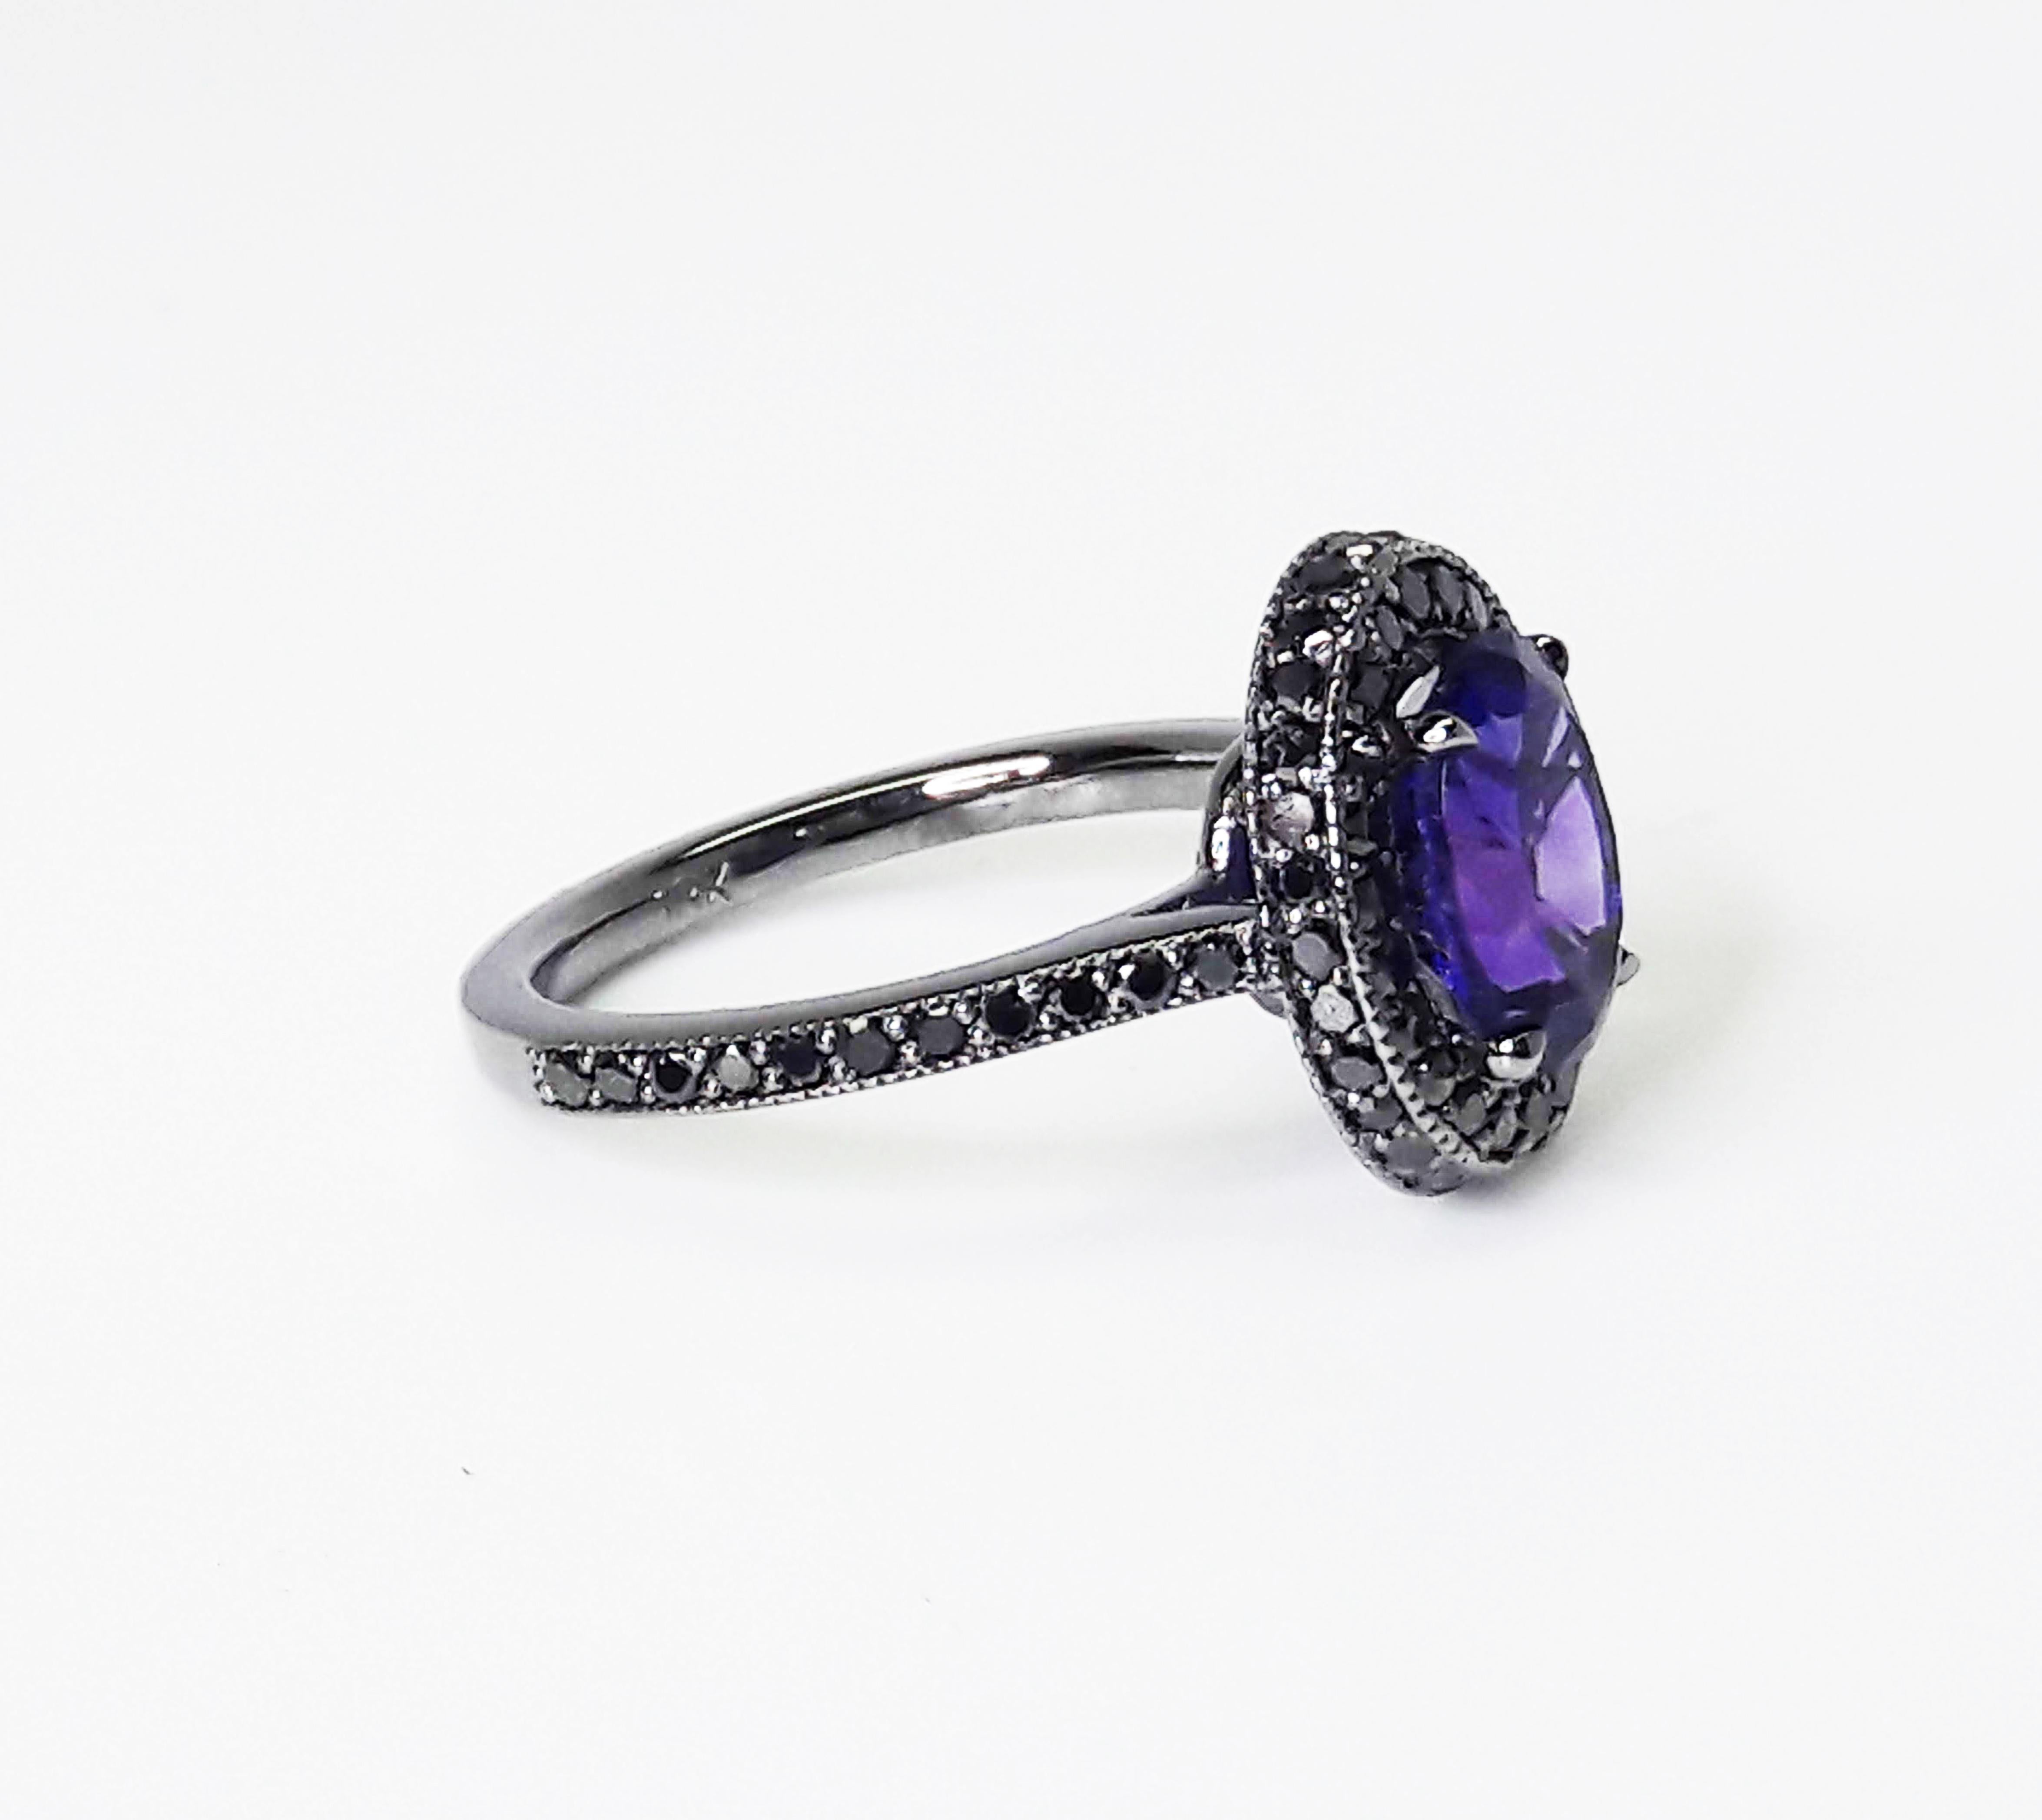 1,5 Karat natürlicher violetter Amethyst, geschmückt mit einem doppelten Halo aus schwarzen Diamanten mit einem Gesamtkaratgewicht von 0,52 Karat, eingefasst in einen handgefertigten Ring aus 18 Karat Weißgold, schwarz rhodiniert.

Handgefertigt in